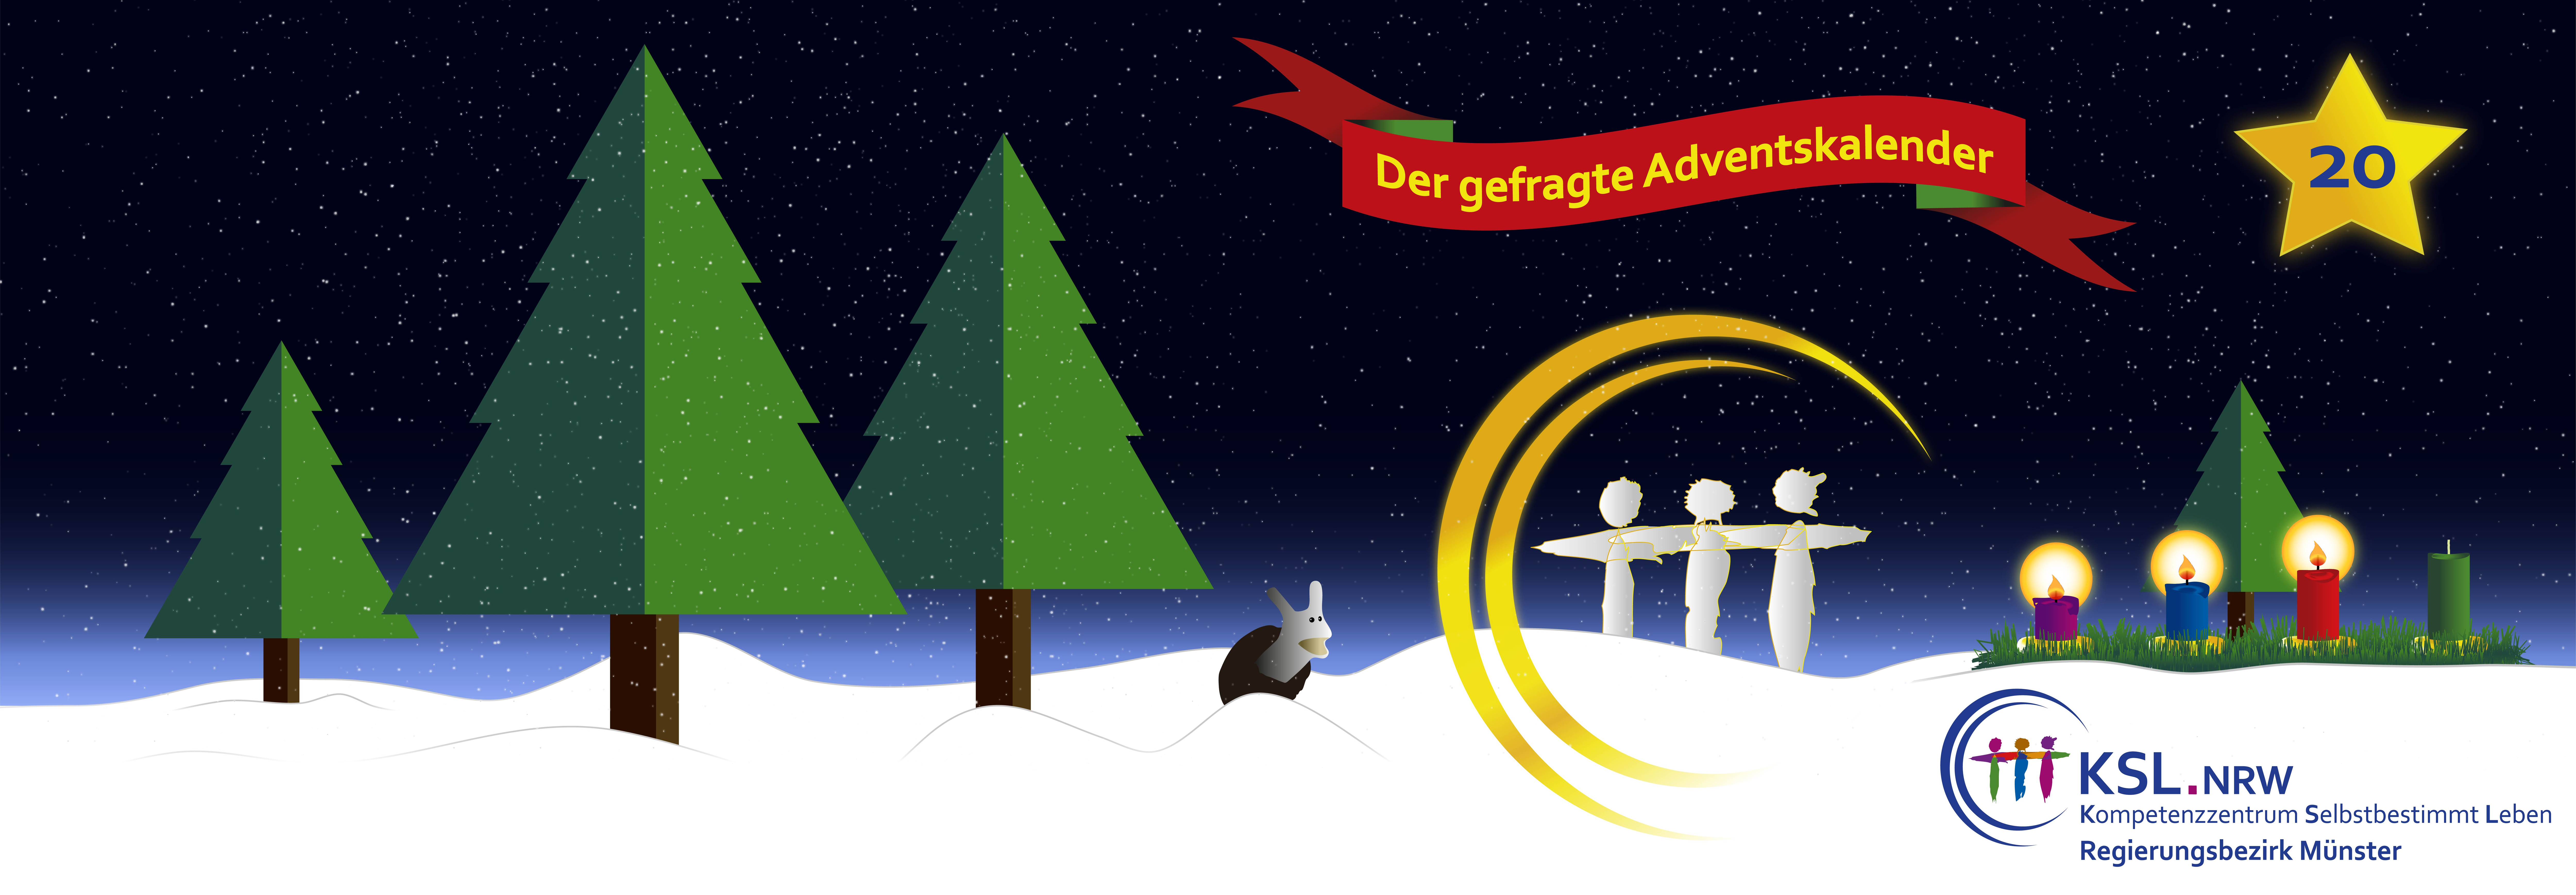 Der gefragte Adventskalender - KSL Münster - weihnachtlicher Hintergrund - vier Tannenbäume - ein Stern mit der Nummer 20 - ein Adventskranz mit vier Kerzen